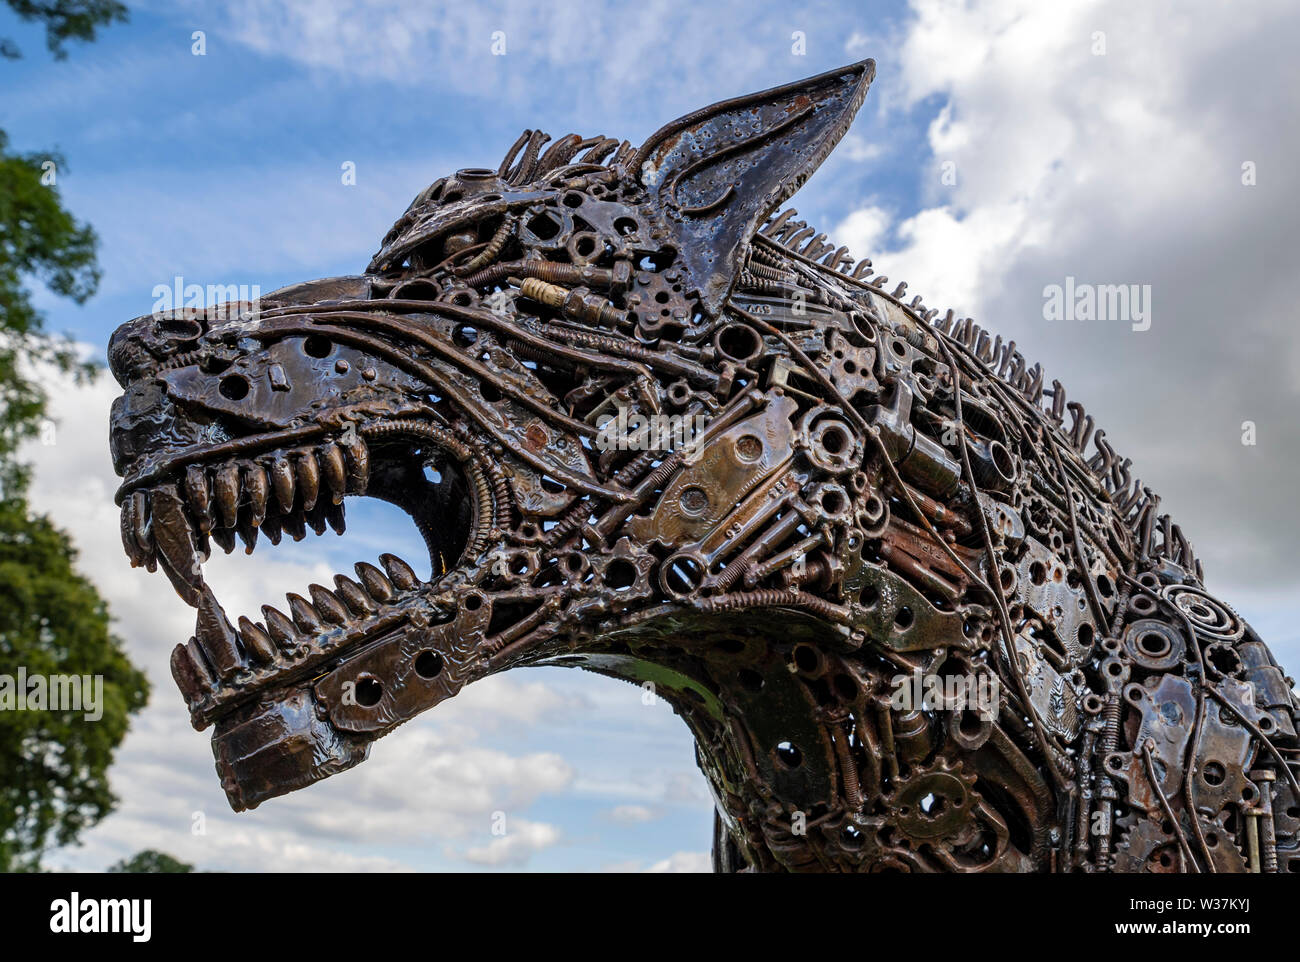 Werewolf Sculpture at the British Ironwork Centre Stock Photo